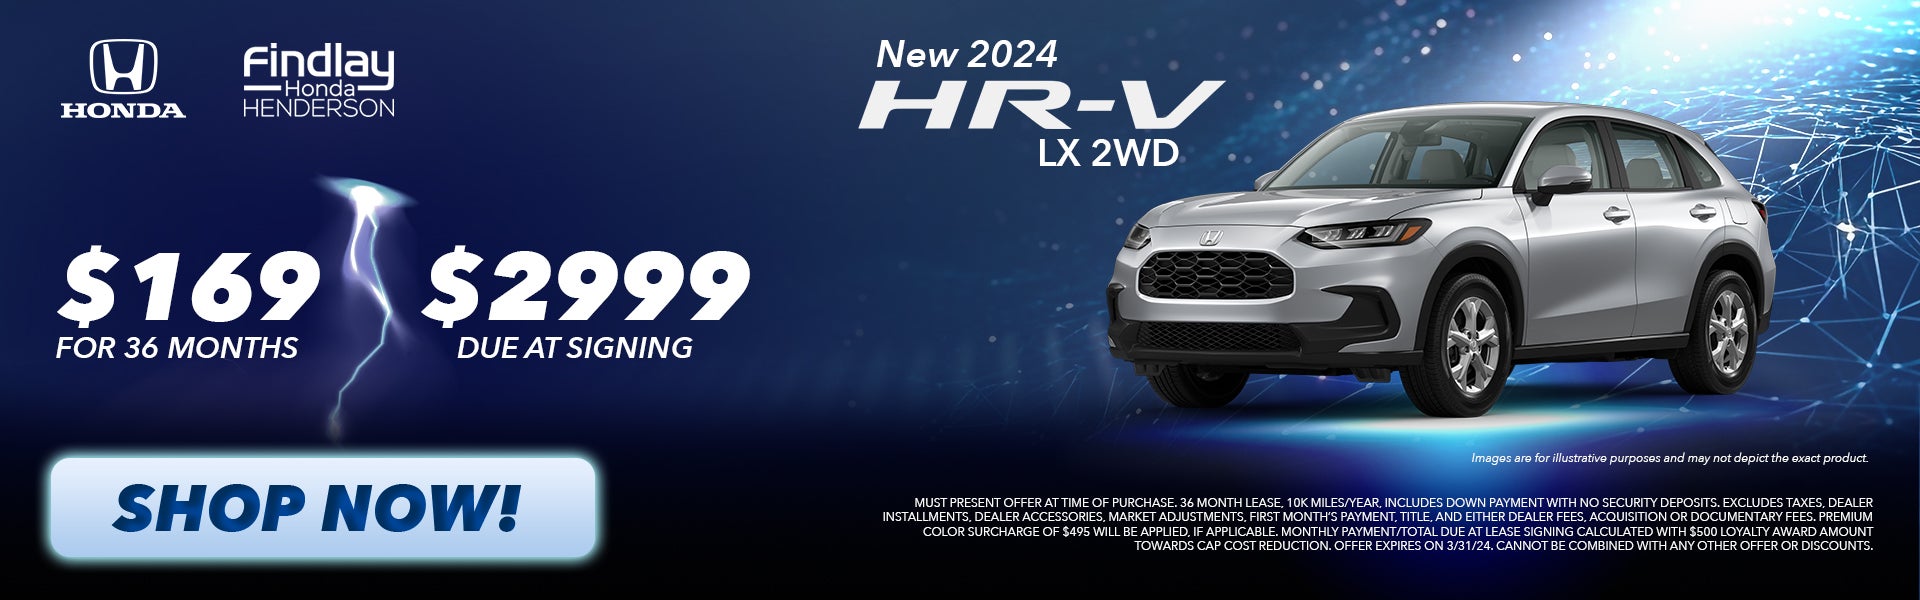 2024 HR-V LX